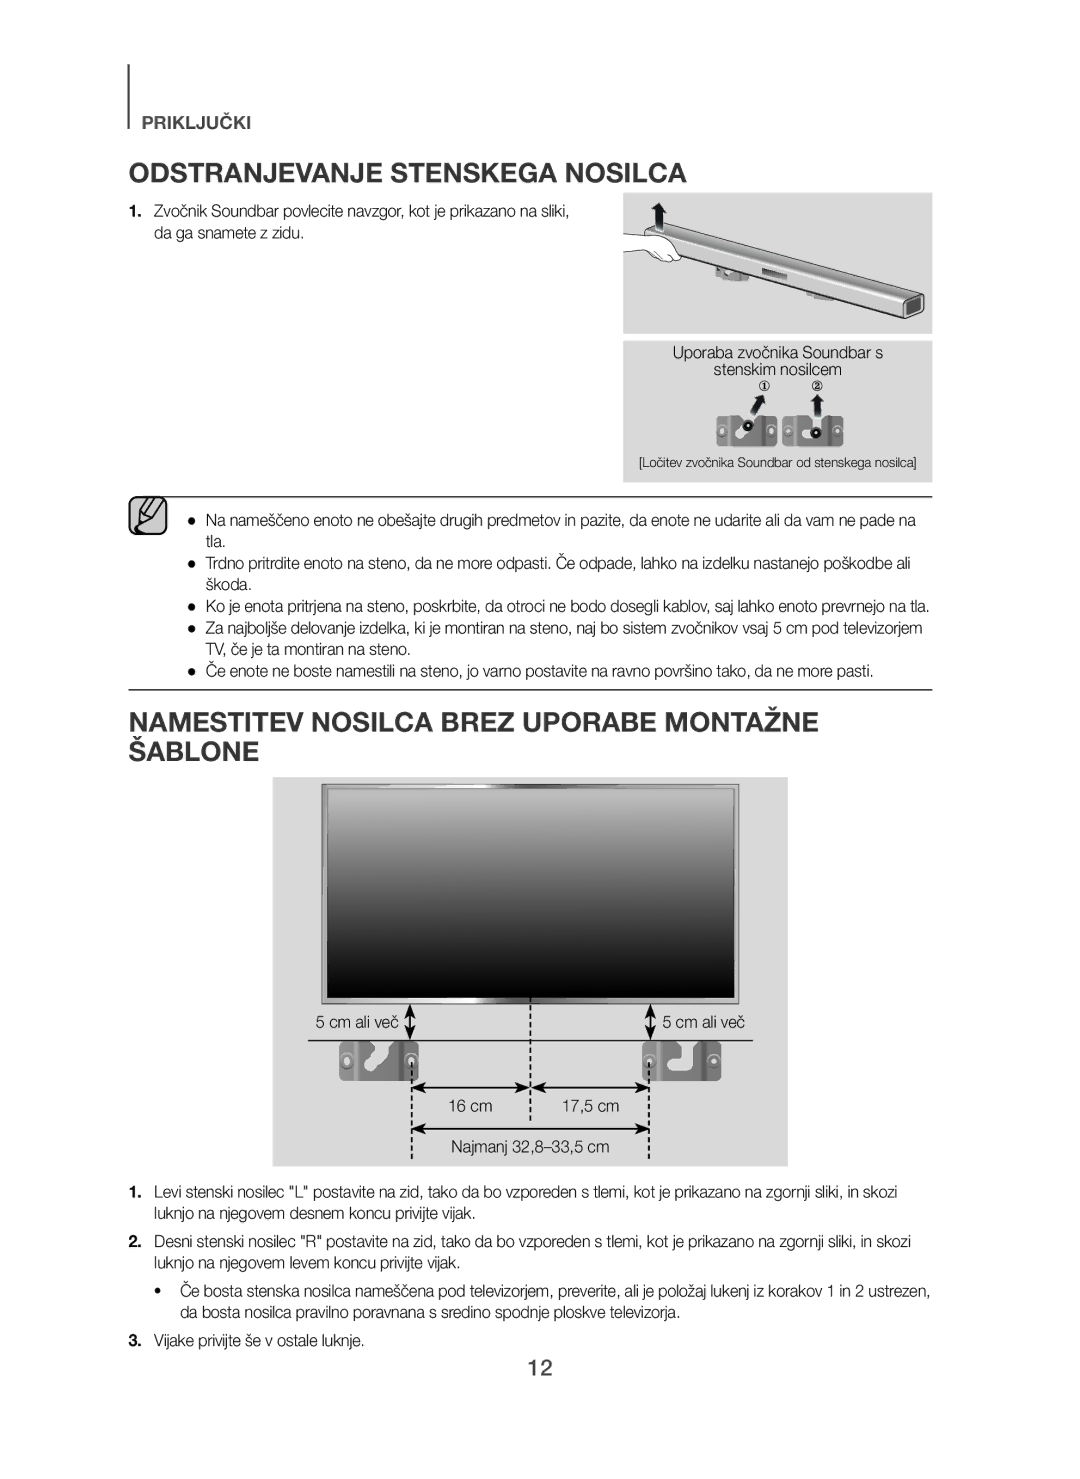 Samsung HW-H450/ZF Odstranjevanje Stenskega Nosilca, Namestitev Nosilca Brez Uporabe Montažne Šablone, Cm ali več 16 cm 